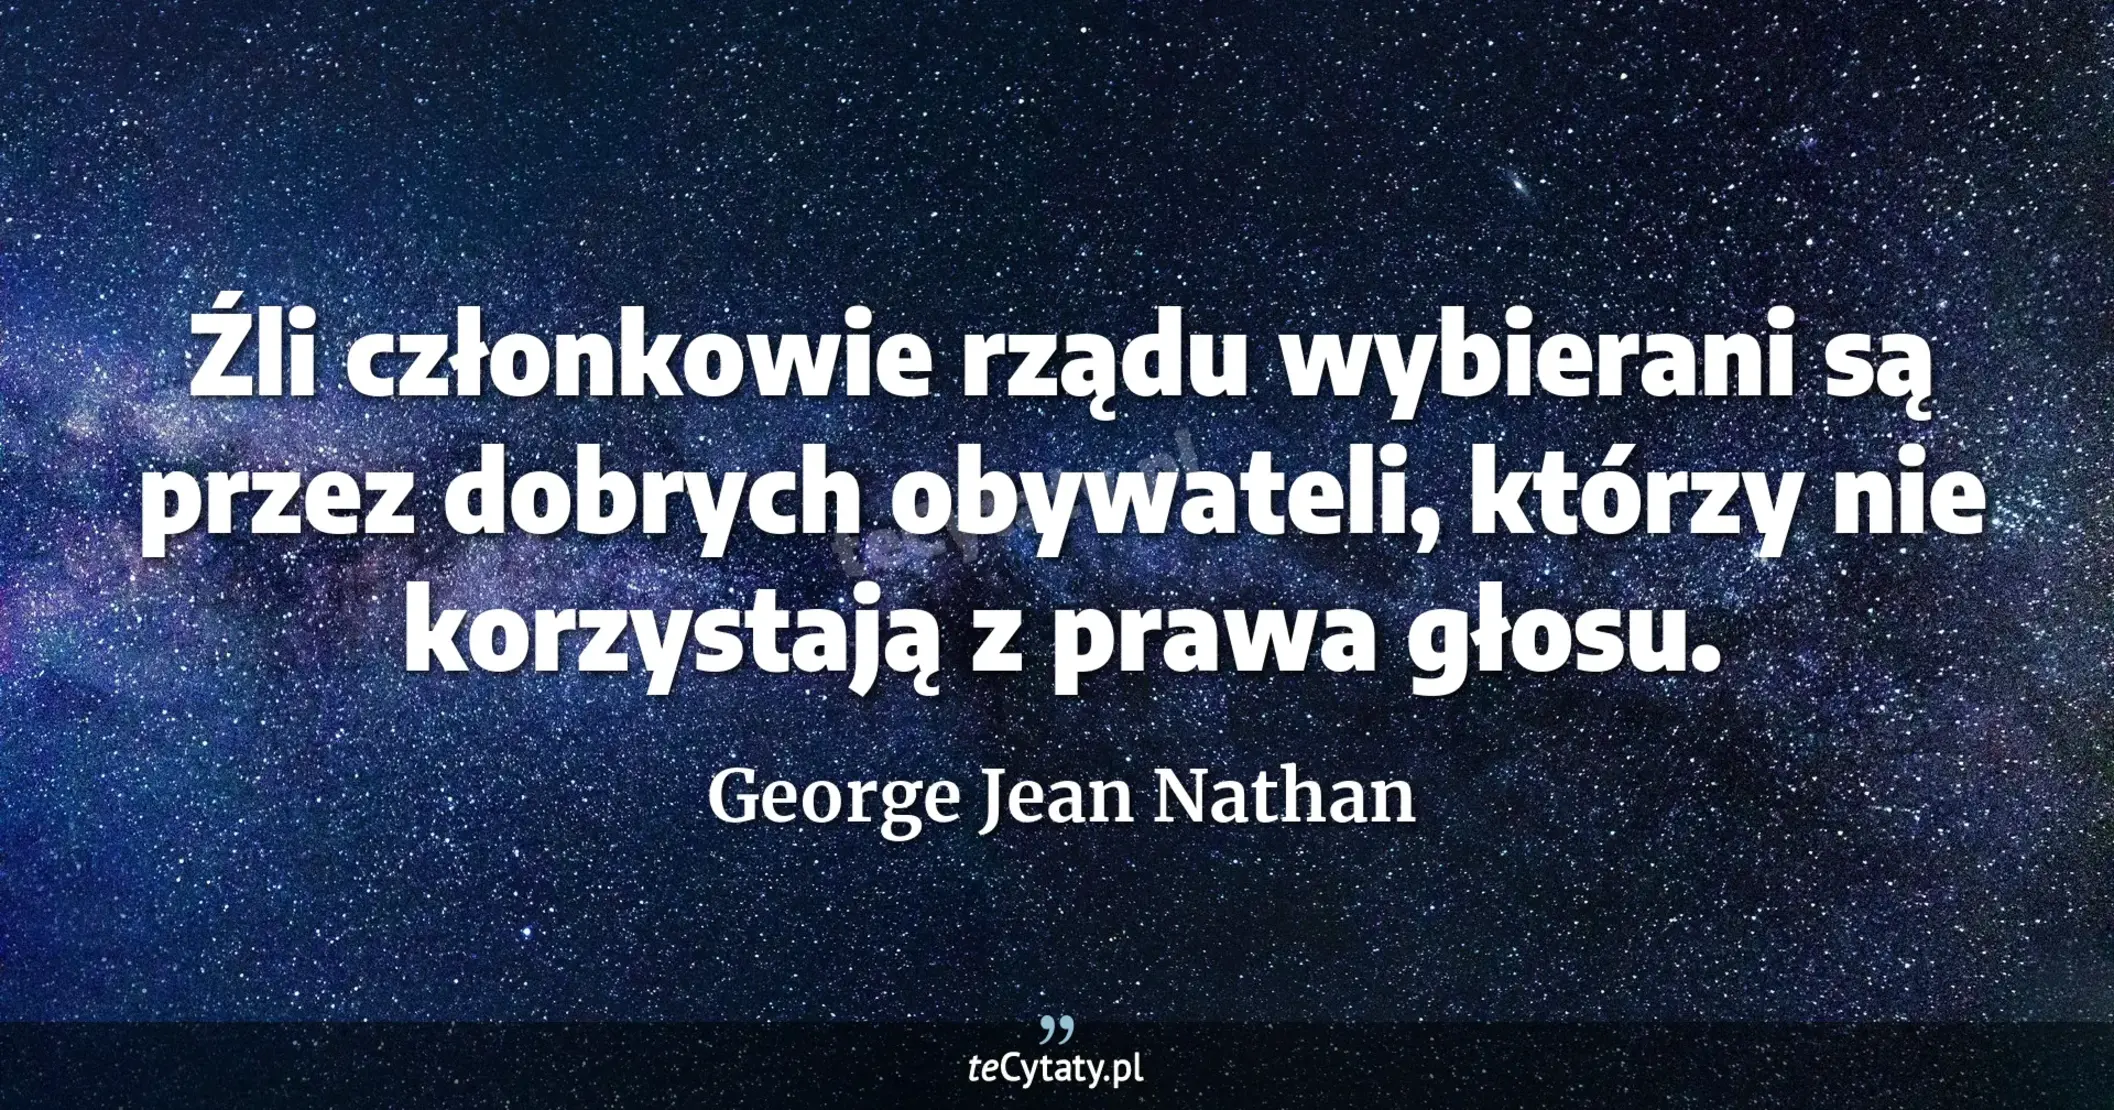 Źli członkowie rządu wybierani są przez dobrych obywateli, którzy nie korzystają z prawa głosu. - George Jean Nathan